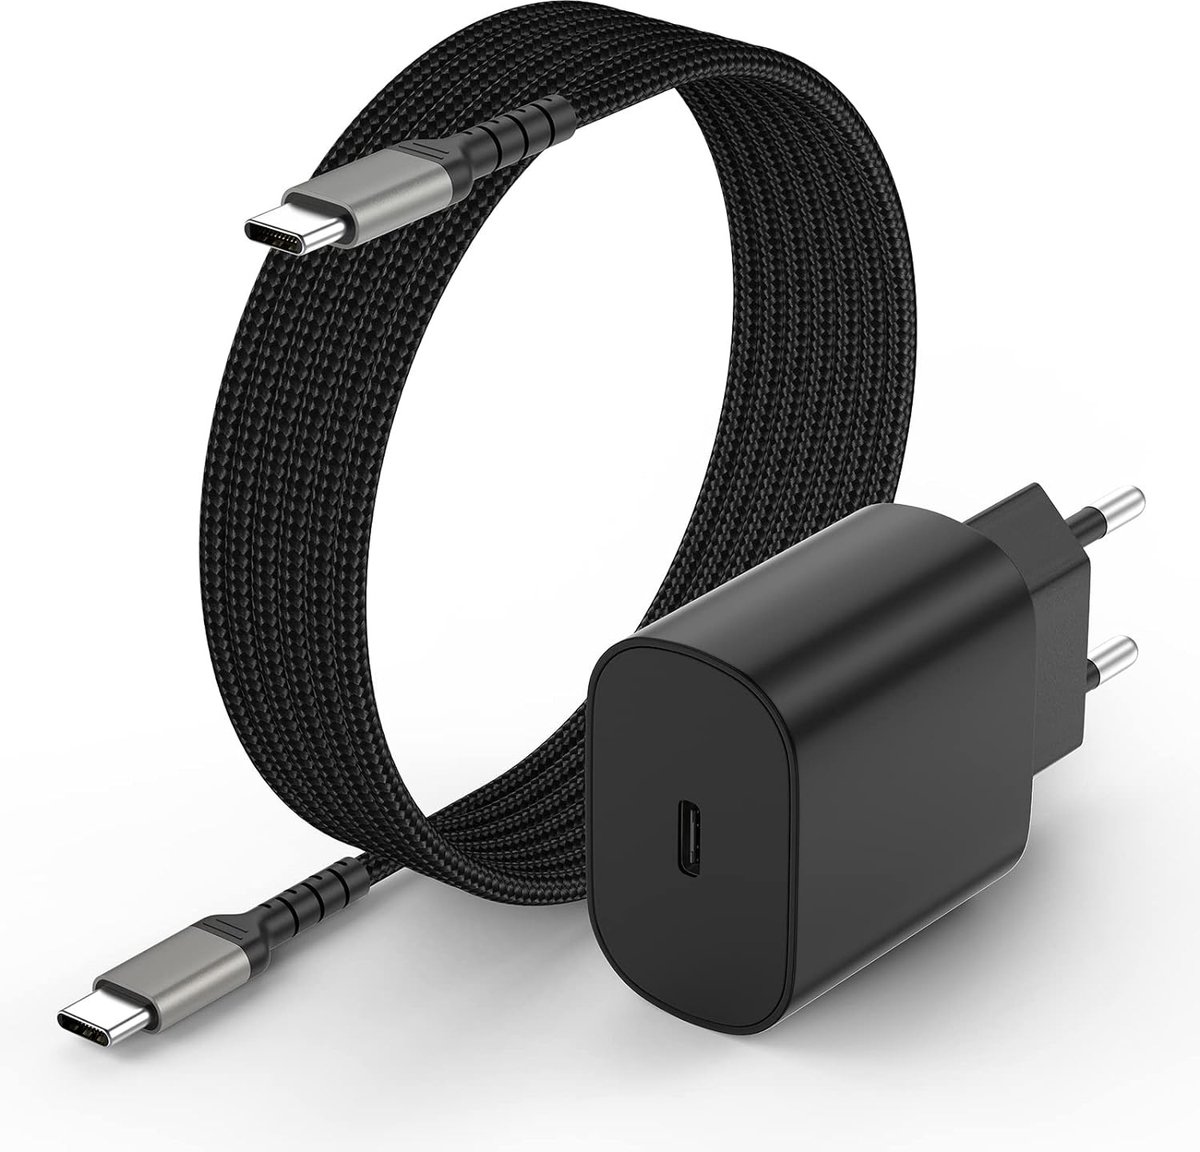 Chargeur avec câble pour iPhone 11-14 USB-C 20W